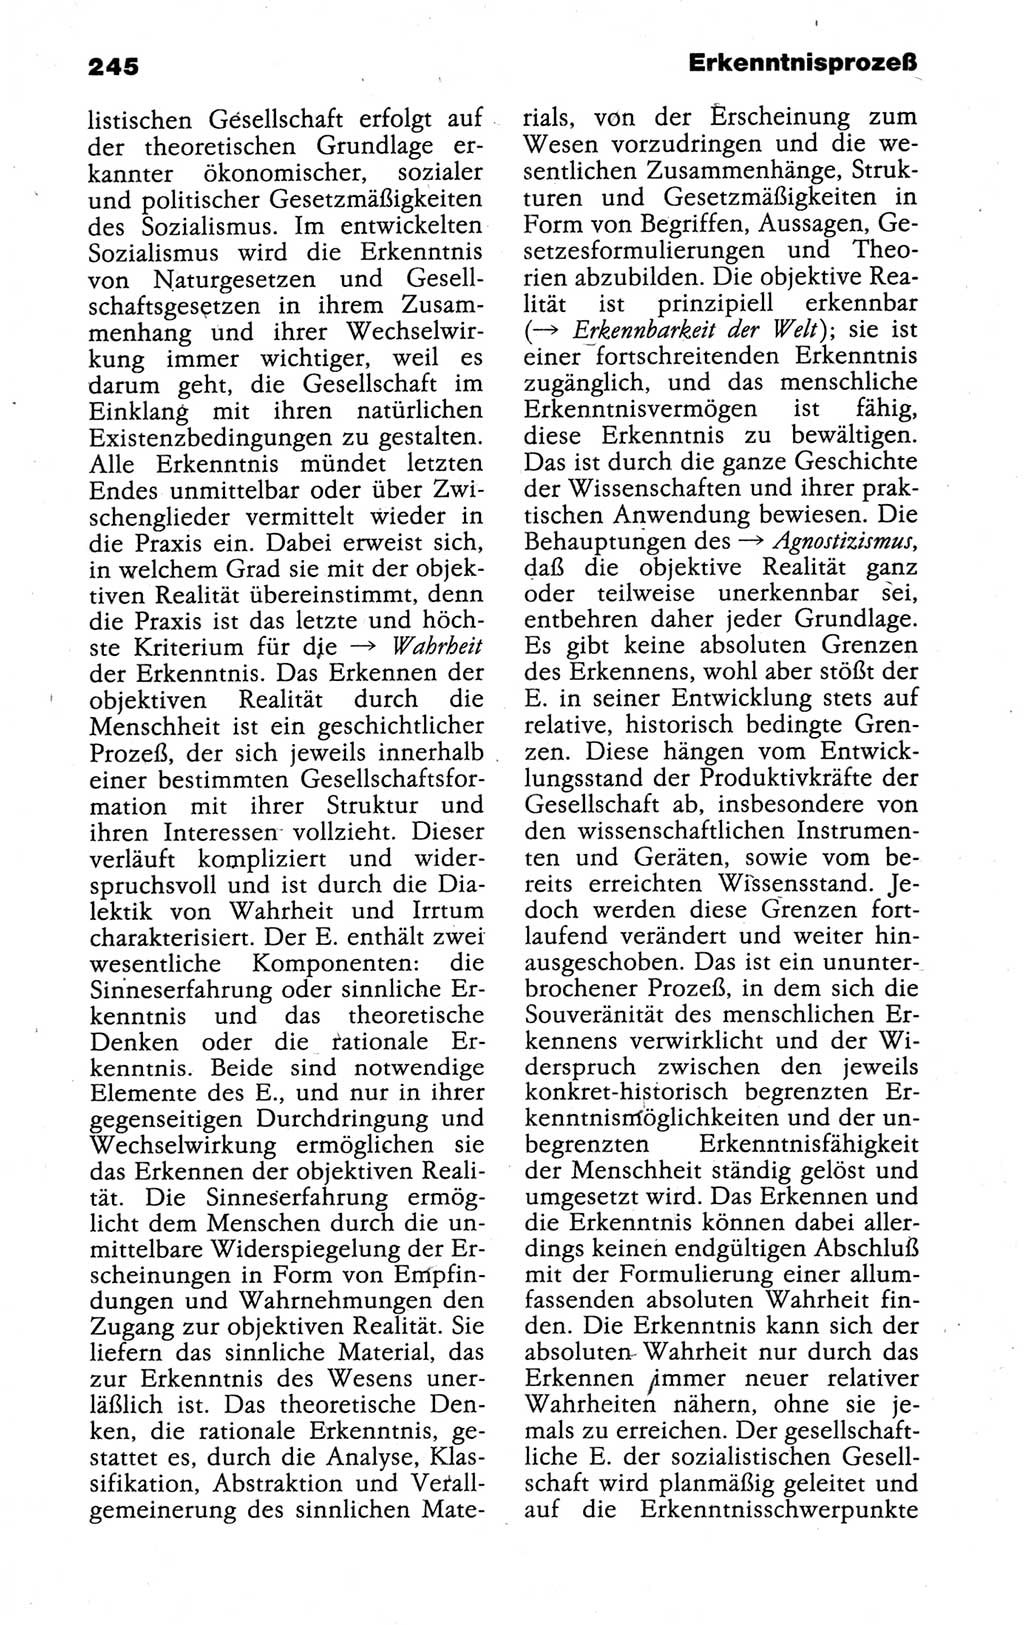 Kleines politisches Wörterbuch [Deutsche Demokratische Republik (DDR)] 1988, Seite 245 (Kl. pol. Wb. DDR 1988, S. 245)